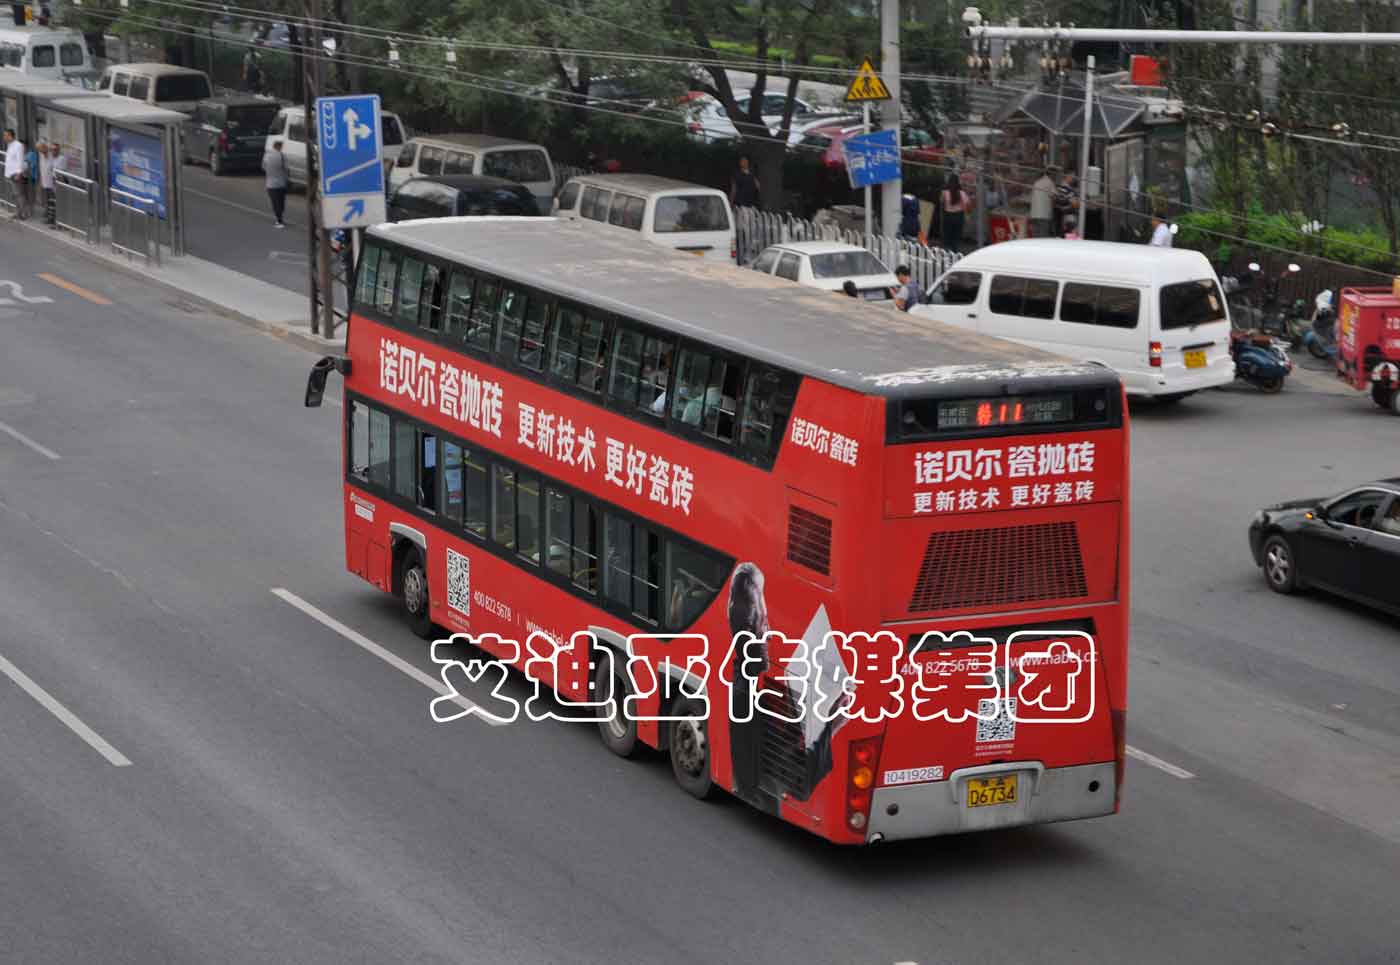 公交车广告案例图片-鸿运国际